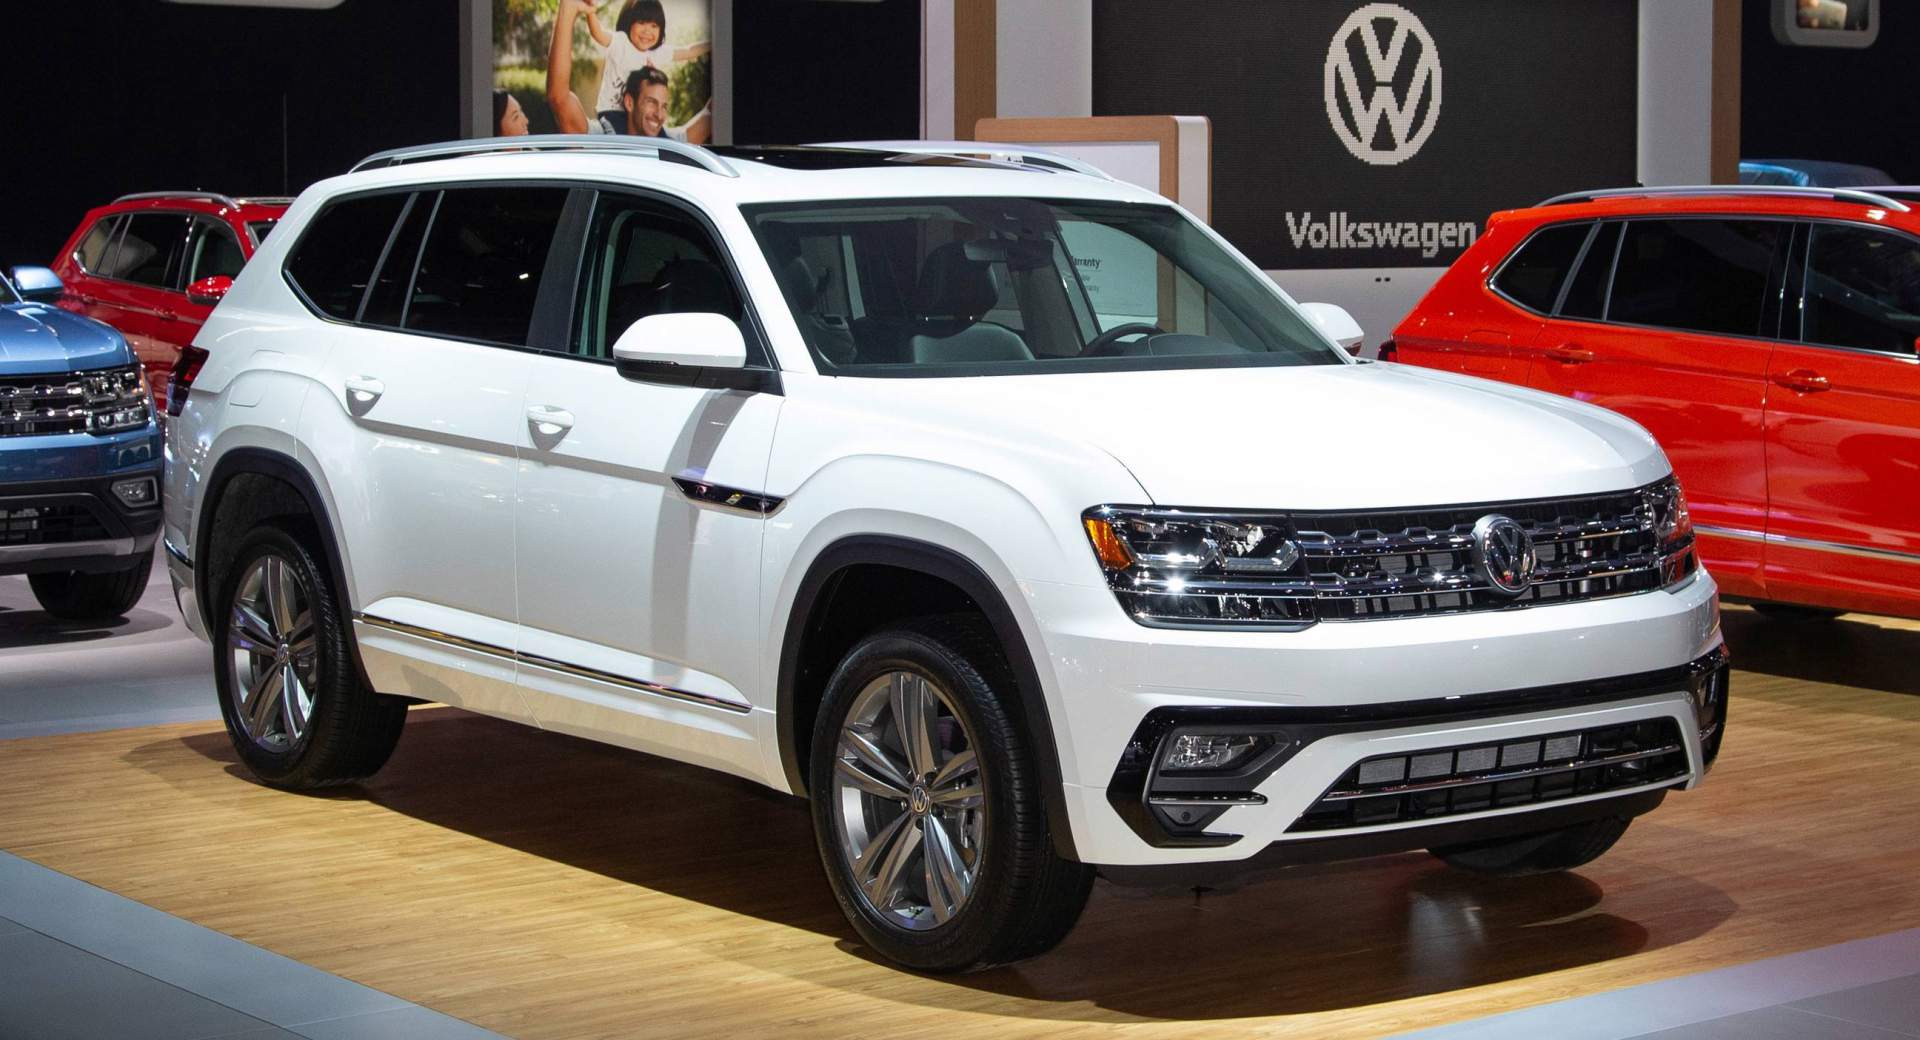 Volkswagen, Volkswagen bán xe không đạt chuẩn, Volkswagen bán xe thử nghiệm, bê bối Volkswagen